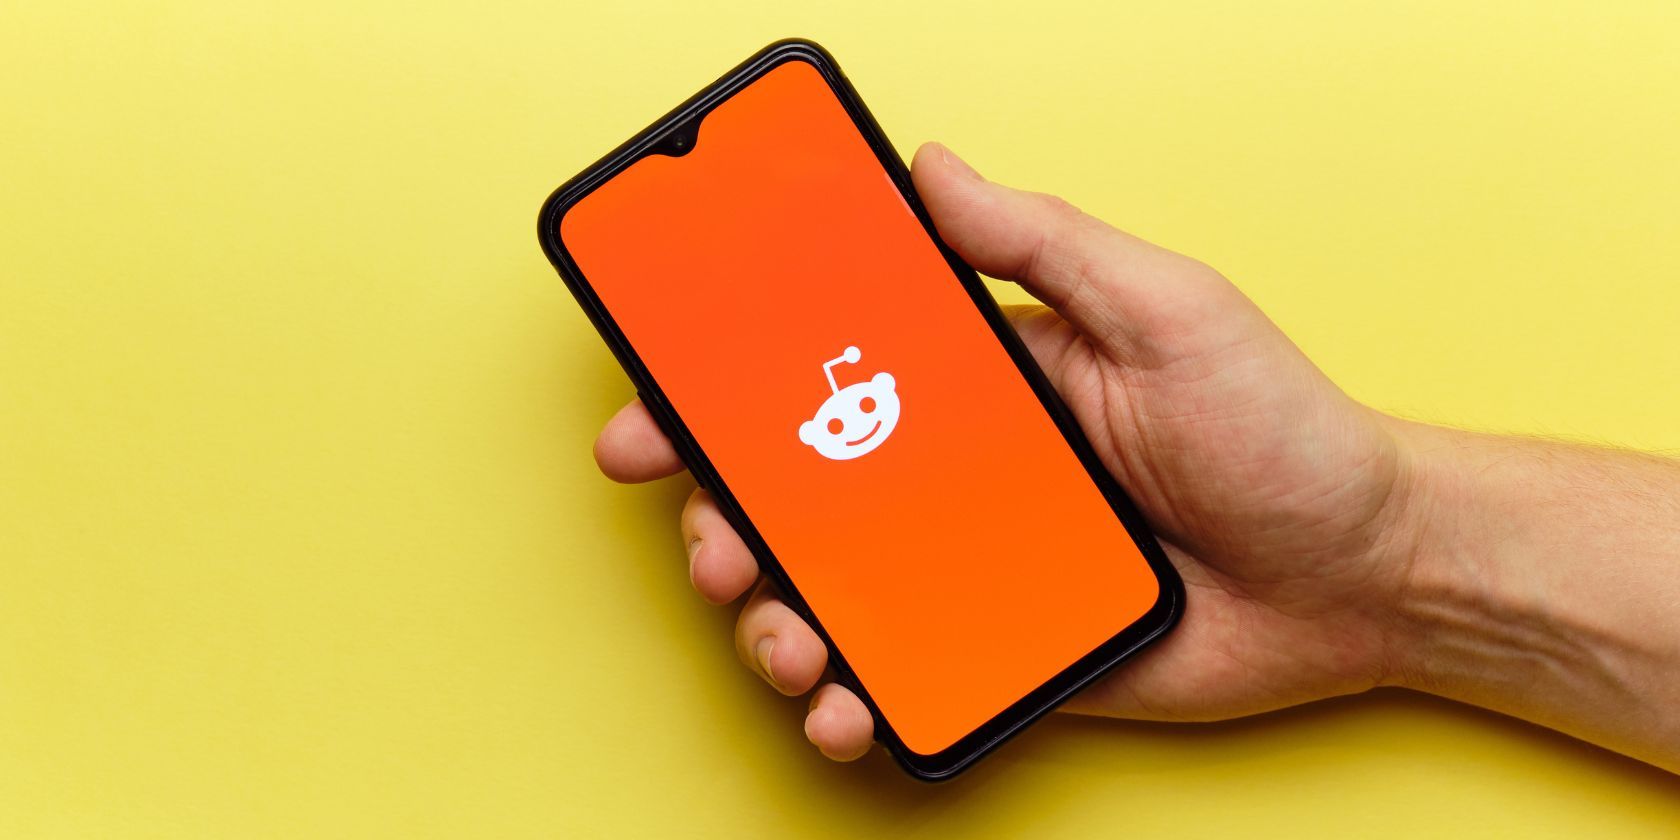 reddit logo on a smartphone